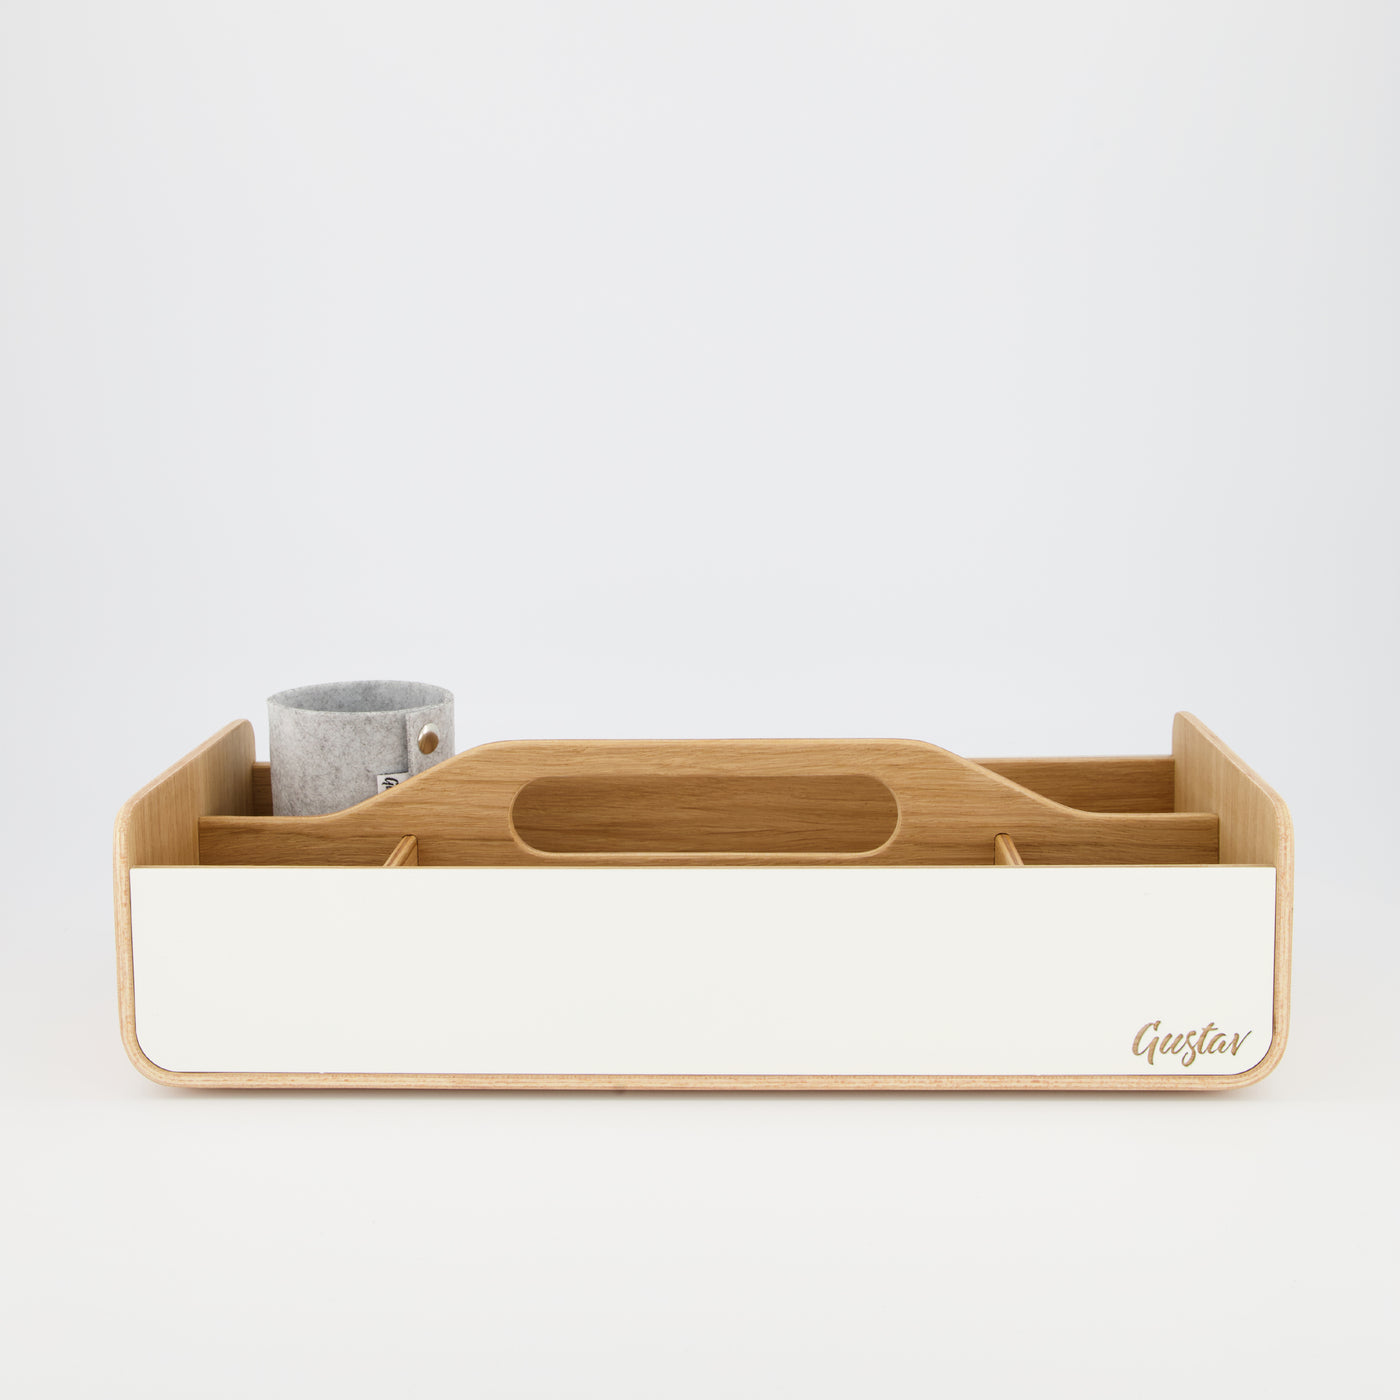 Gustav Lounger - Mobile Desk Organizer White and Wood